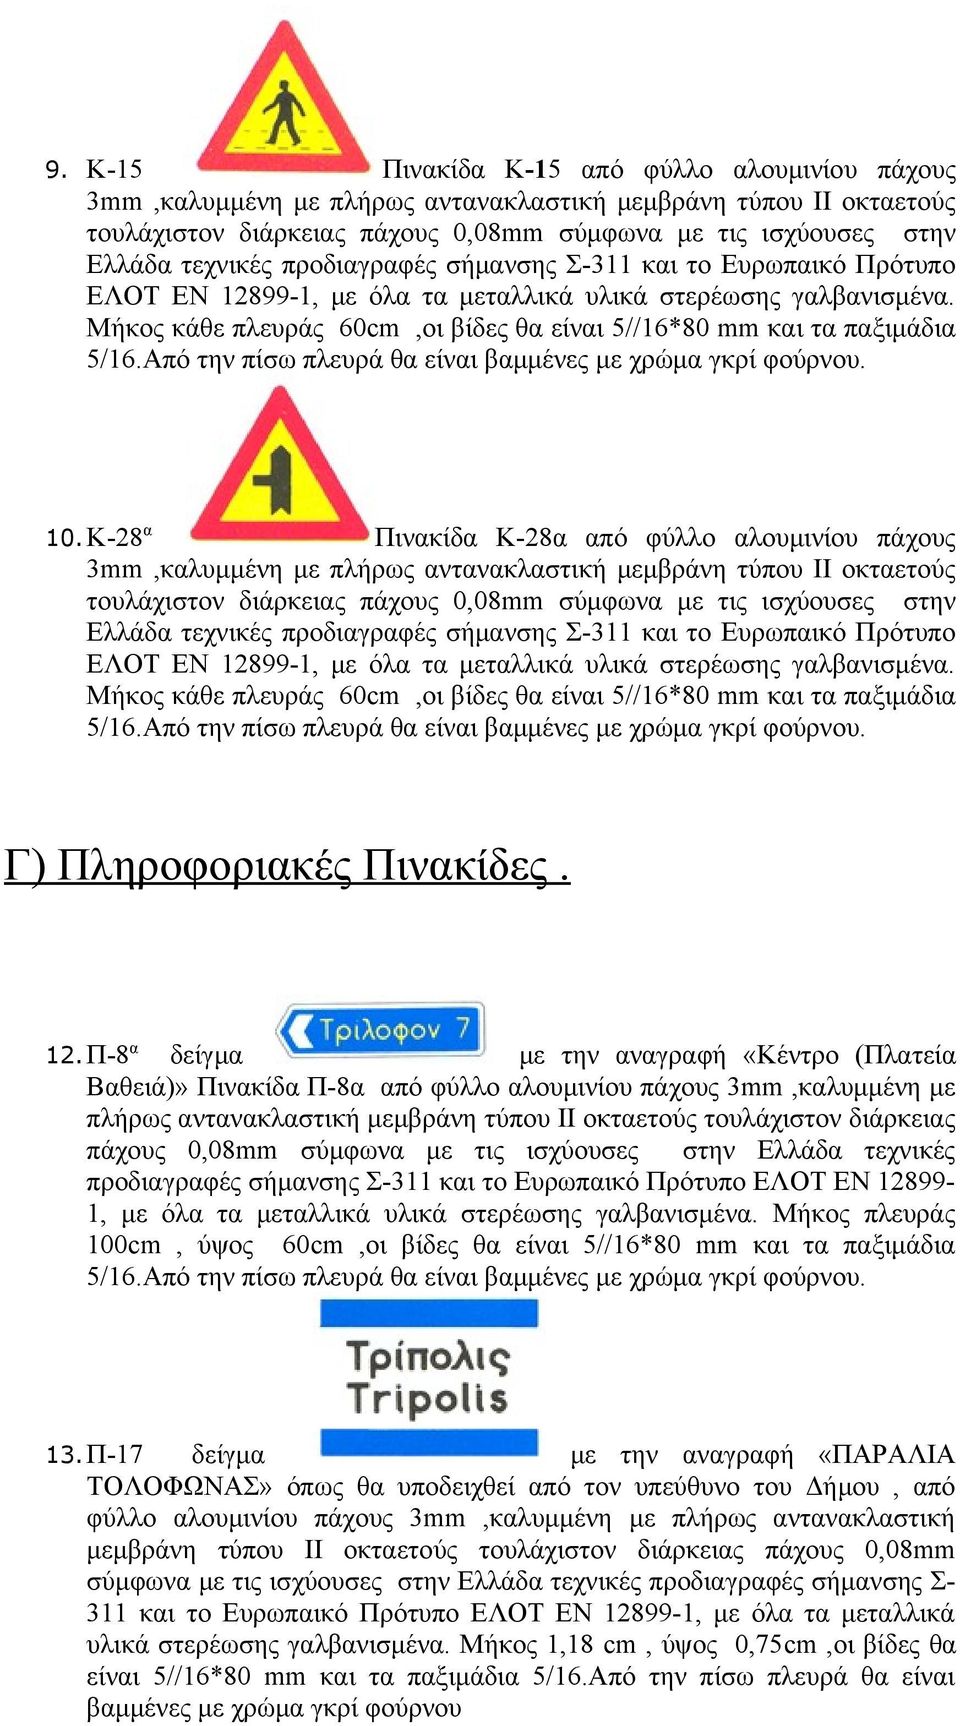 σύμφωνα με τις ισχύουσες στην Ελλάδα τεχνικές προδιαγραφές σήμανσης Σ-311 και το Ευρωπαικό Πρότυπο ΕΛΟΤ ΕΝ 12899-1, με όλα τα μεταλλικά υλικά στερέωσης γαλβανισμένα.